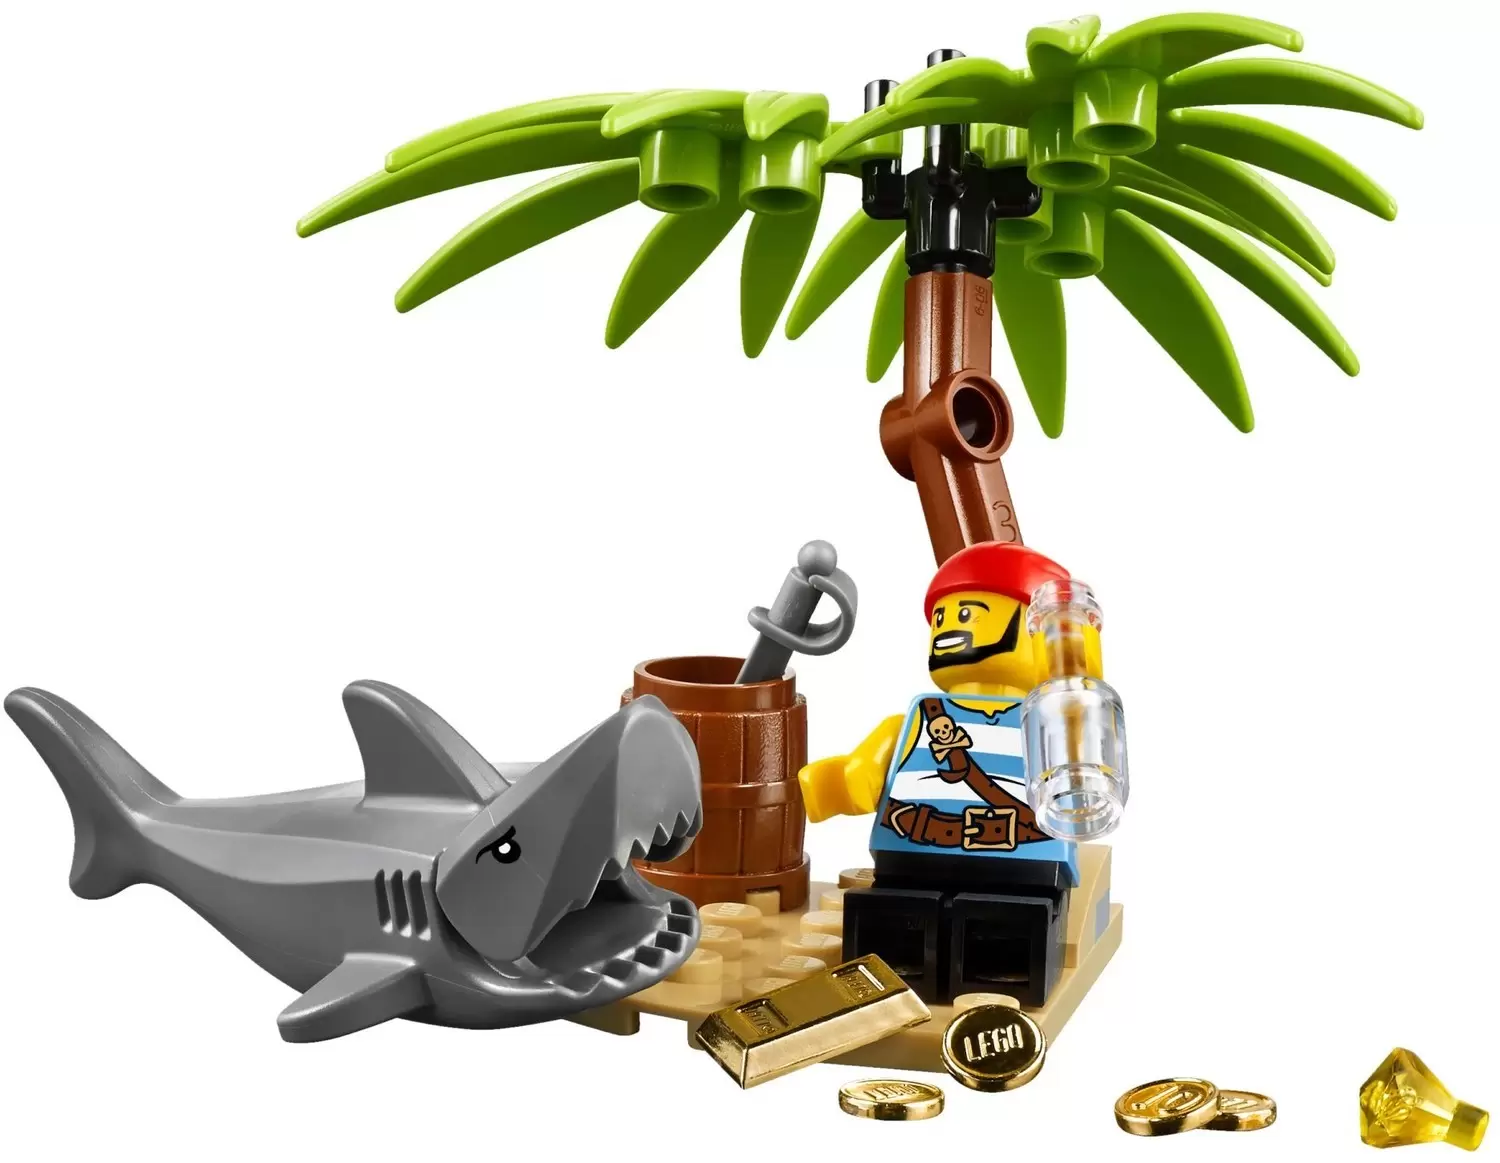 LEGO Pirates - Classic Pirate Minifigure